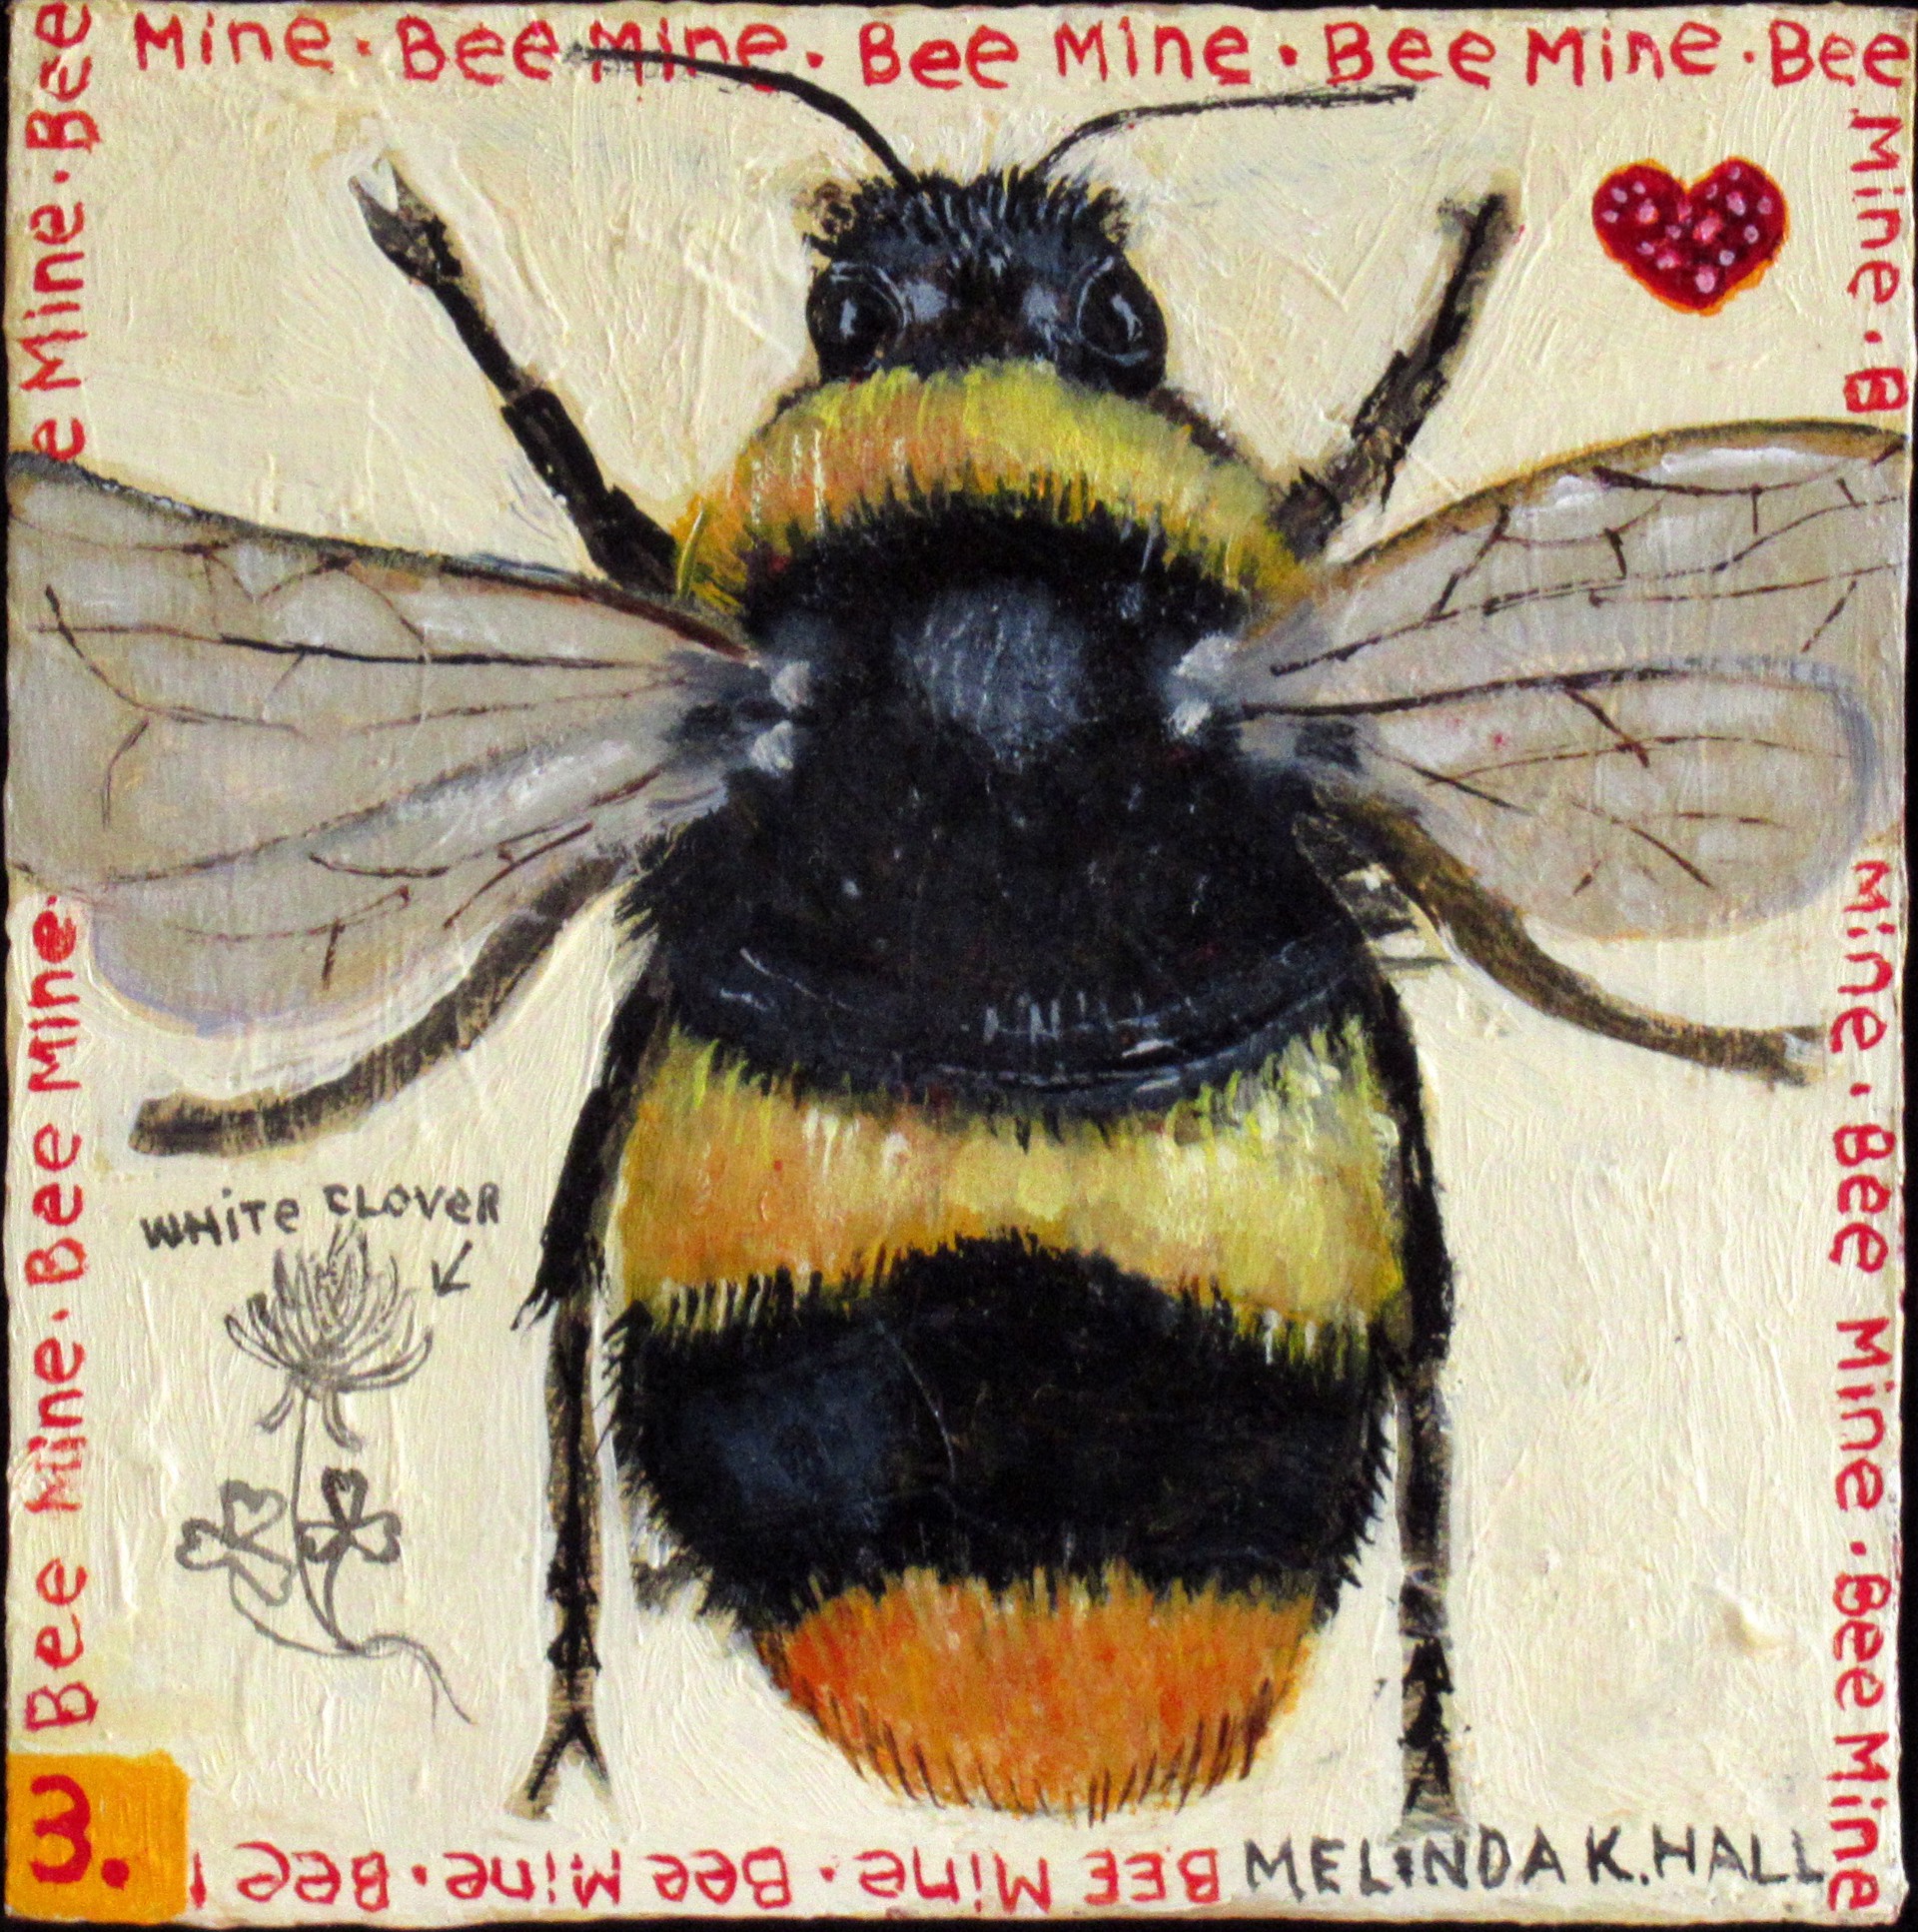 Bee Mine #3 by Melinda K. Hall